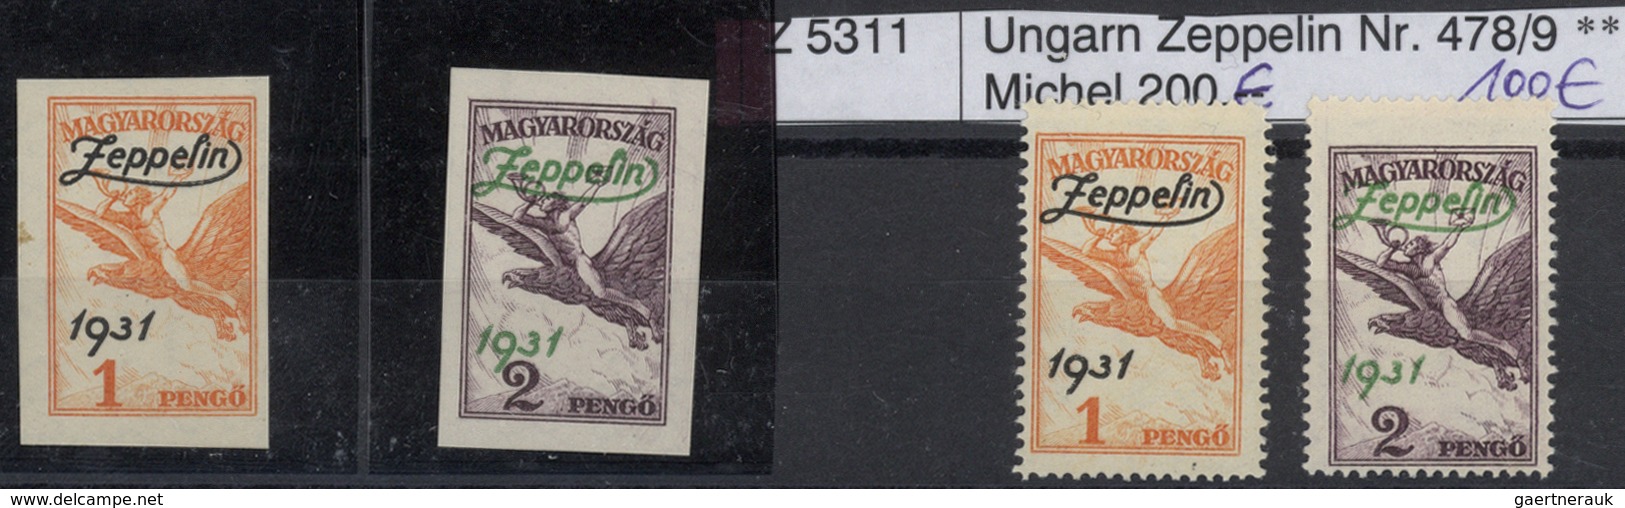 Zeppelinpost Deutschland: 1912/1930, Sammlung von knapp 100 Belegen mit Feldpost/Luftschiffstempel b